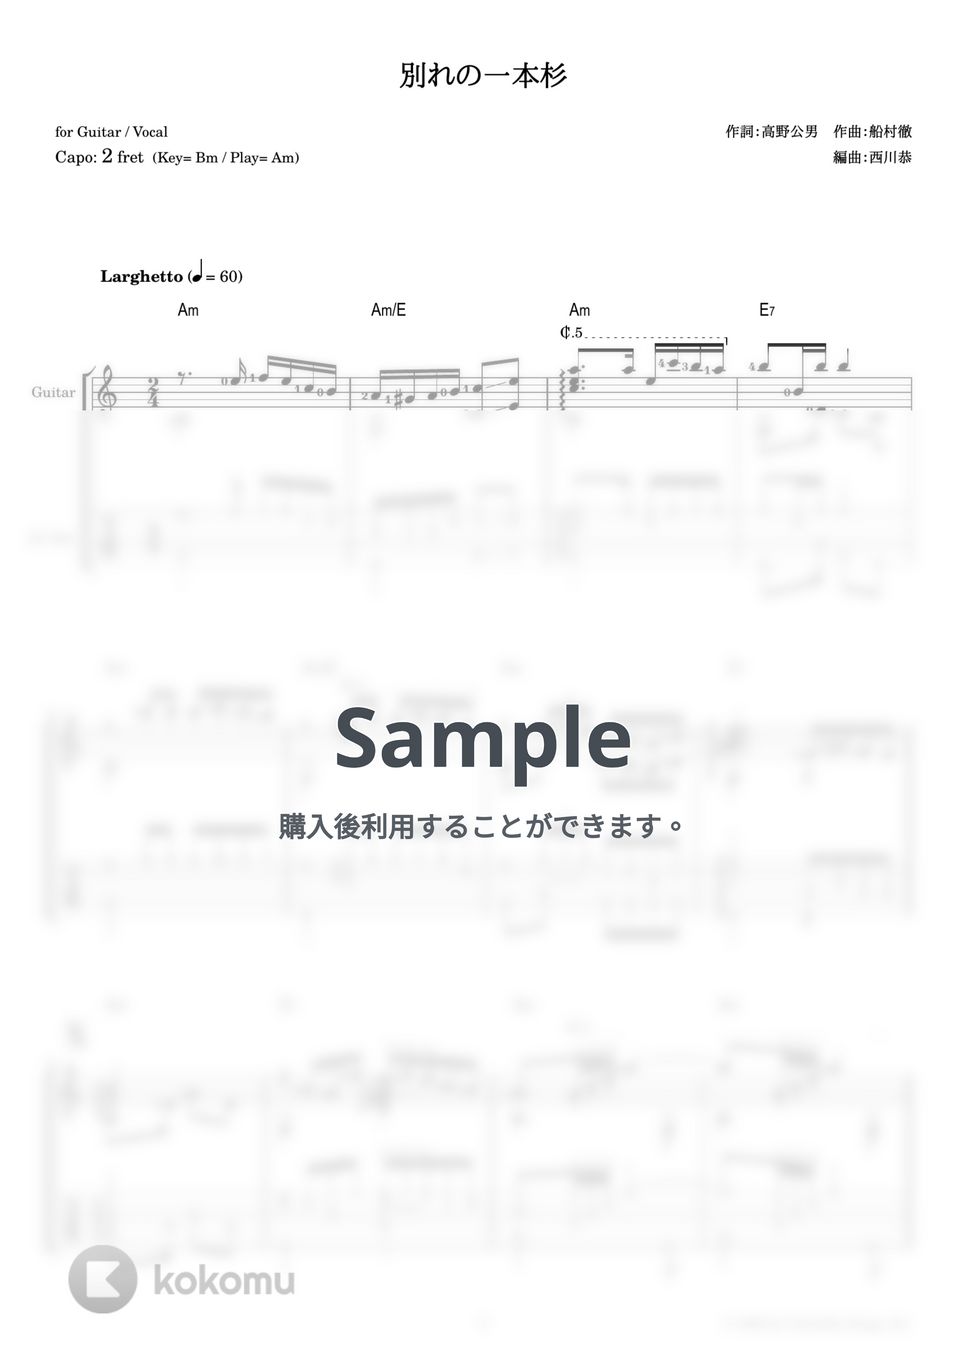 春日八郎 - 別れの一本杉 (ギター伴奏 / 弾き語り) by 西川恭